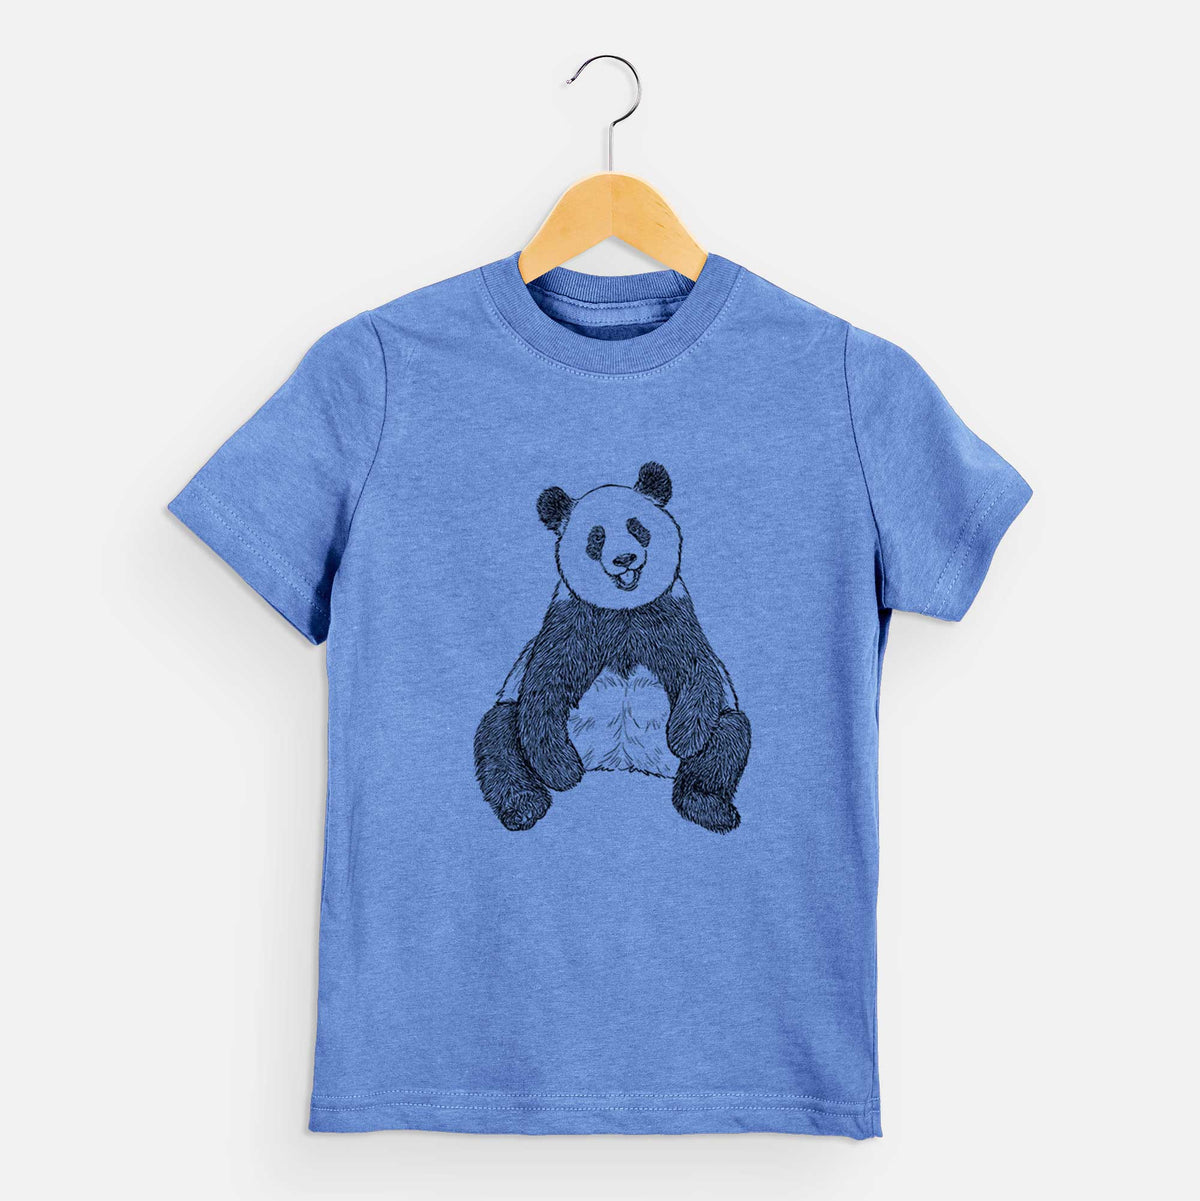 Ailuropoda melanoleuca - Giant Panda Sitting - Kids Shirt